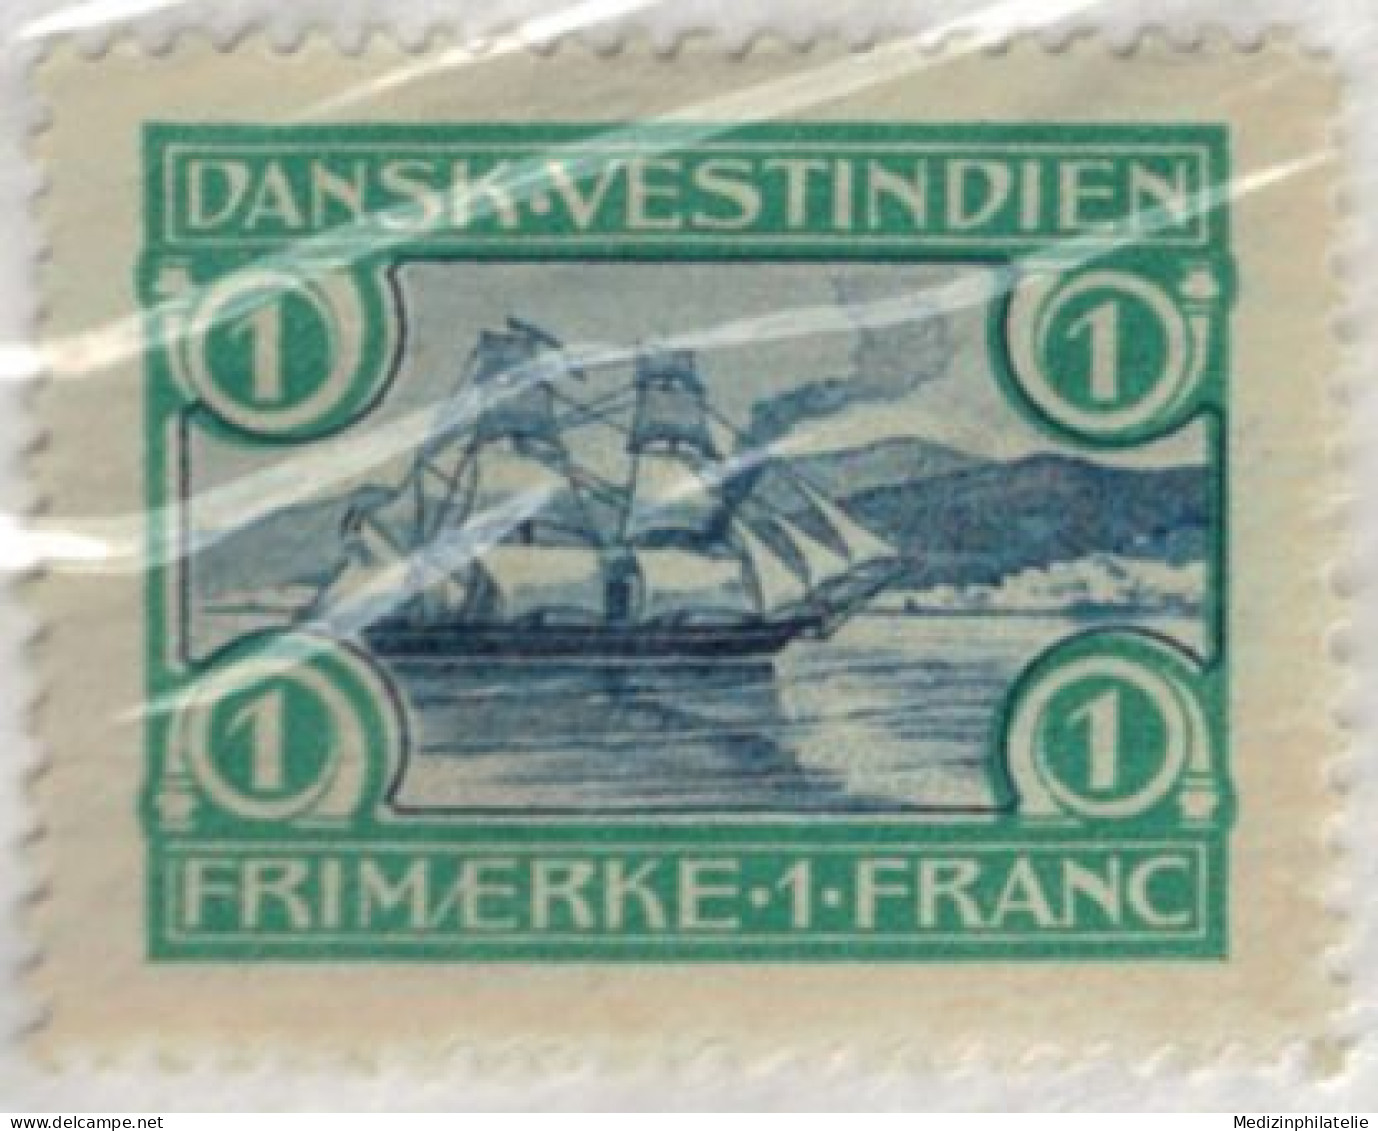 Dänemark Westindien Nr. 35-37 1905 - Danemark (Antilles)